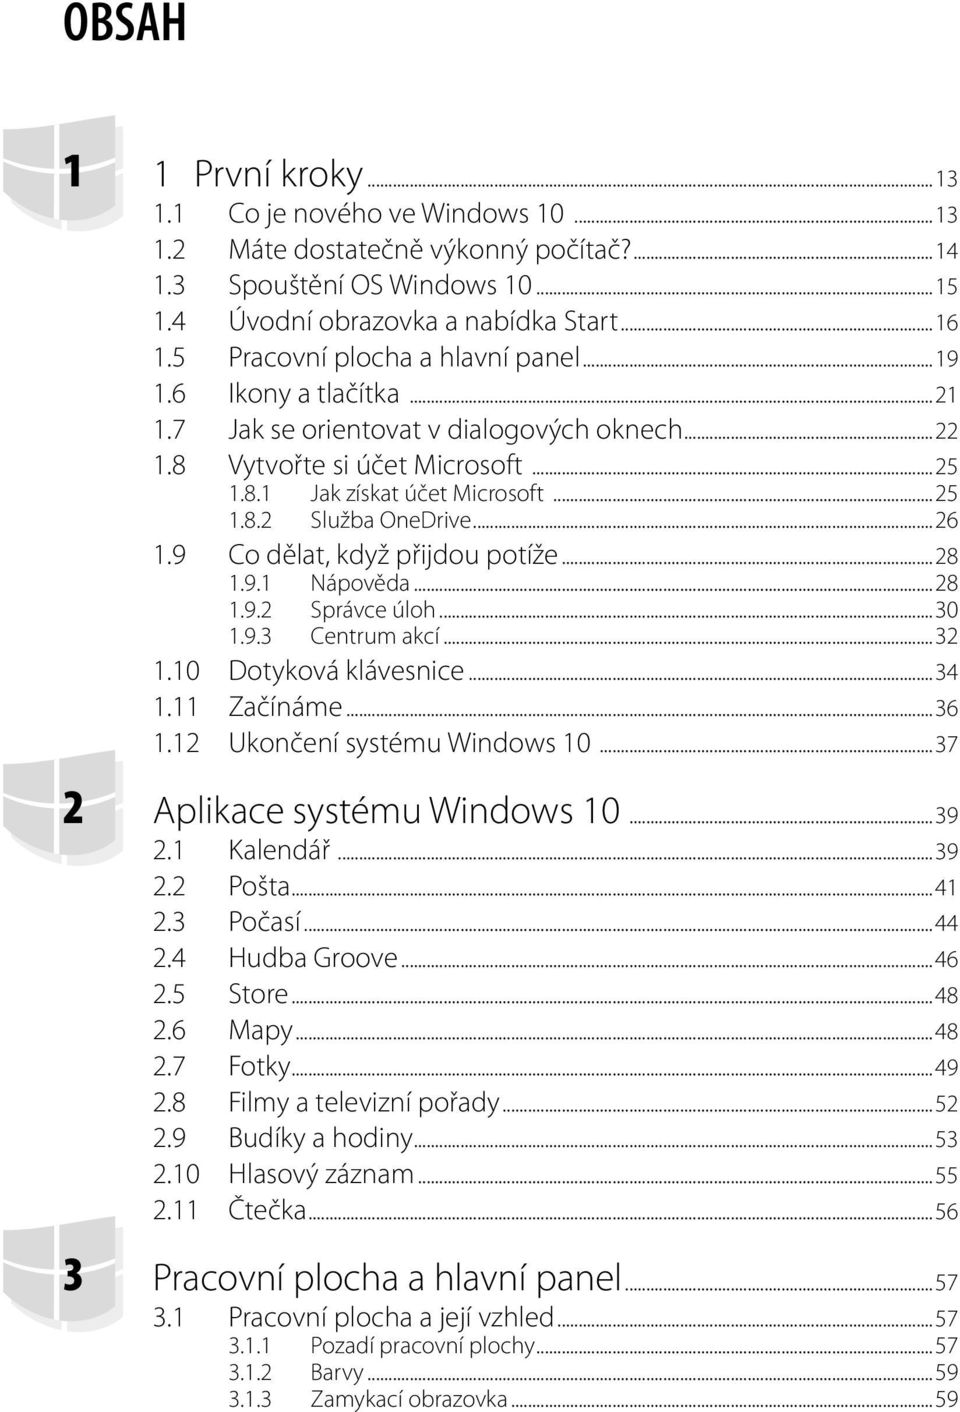 ..26 1.9 Co dělat, když přijdou potíže...28 1.9.1 Nápověda...28 1.9.2 Správce úloh...30 1.9.3 Centrum akcí...32 1.10 Dotyková klávesnice...34 1.11 Začínáme...36 1.12 Ukončení systému Windows 10.